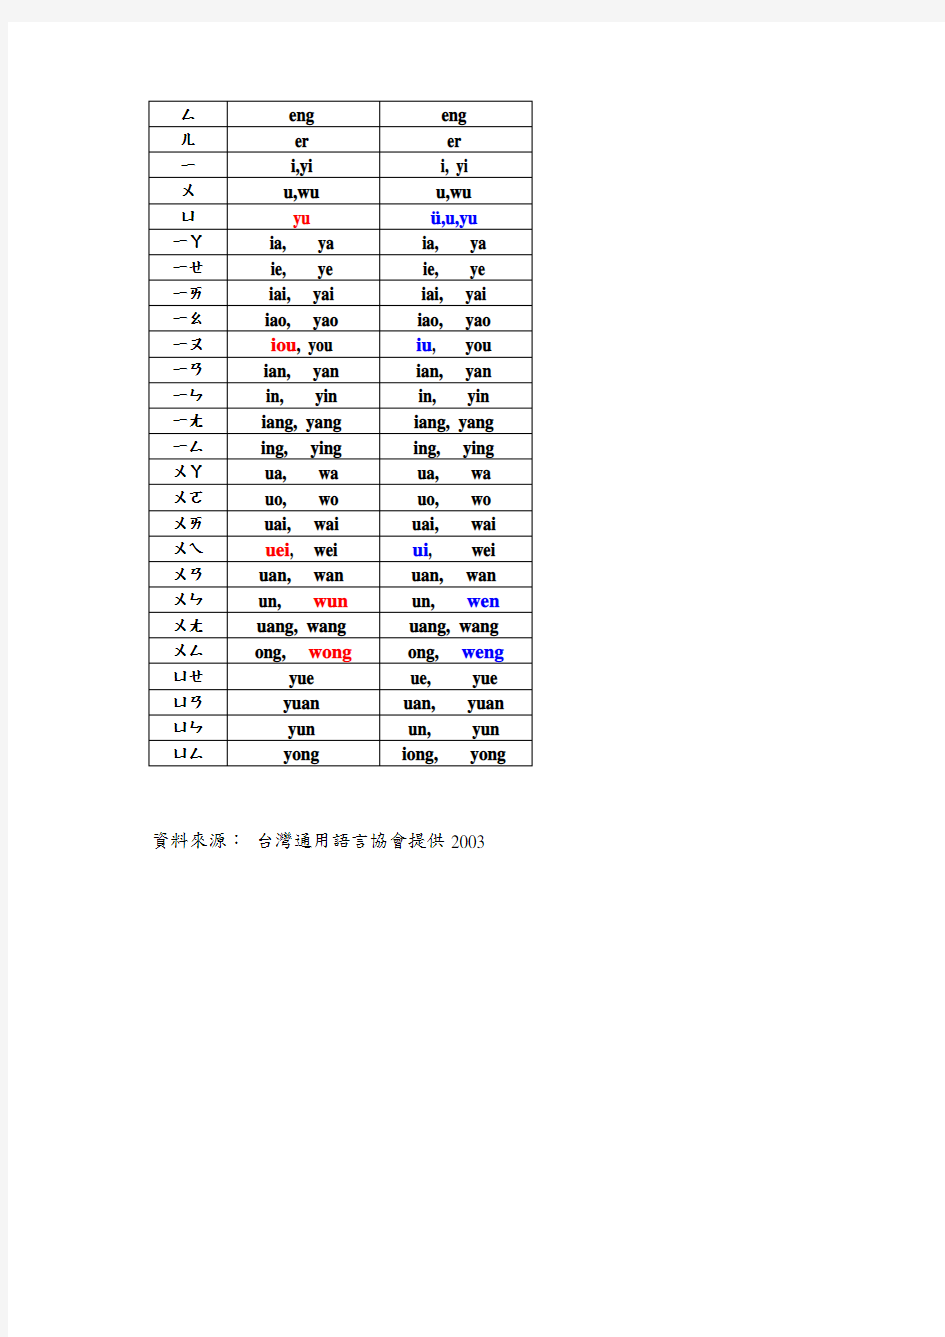 台湾与大陆拼音对照表